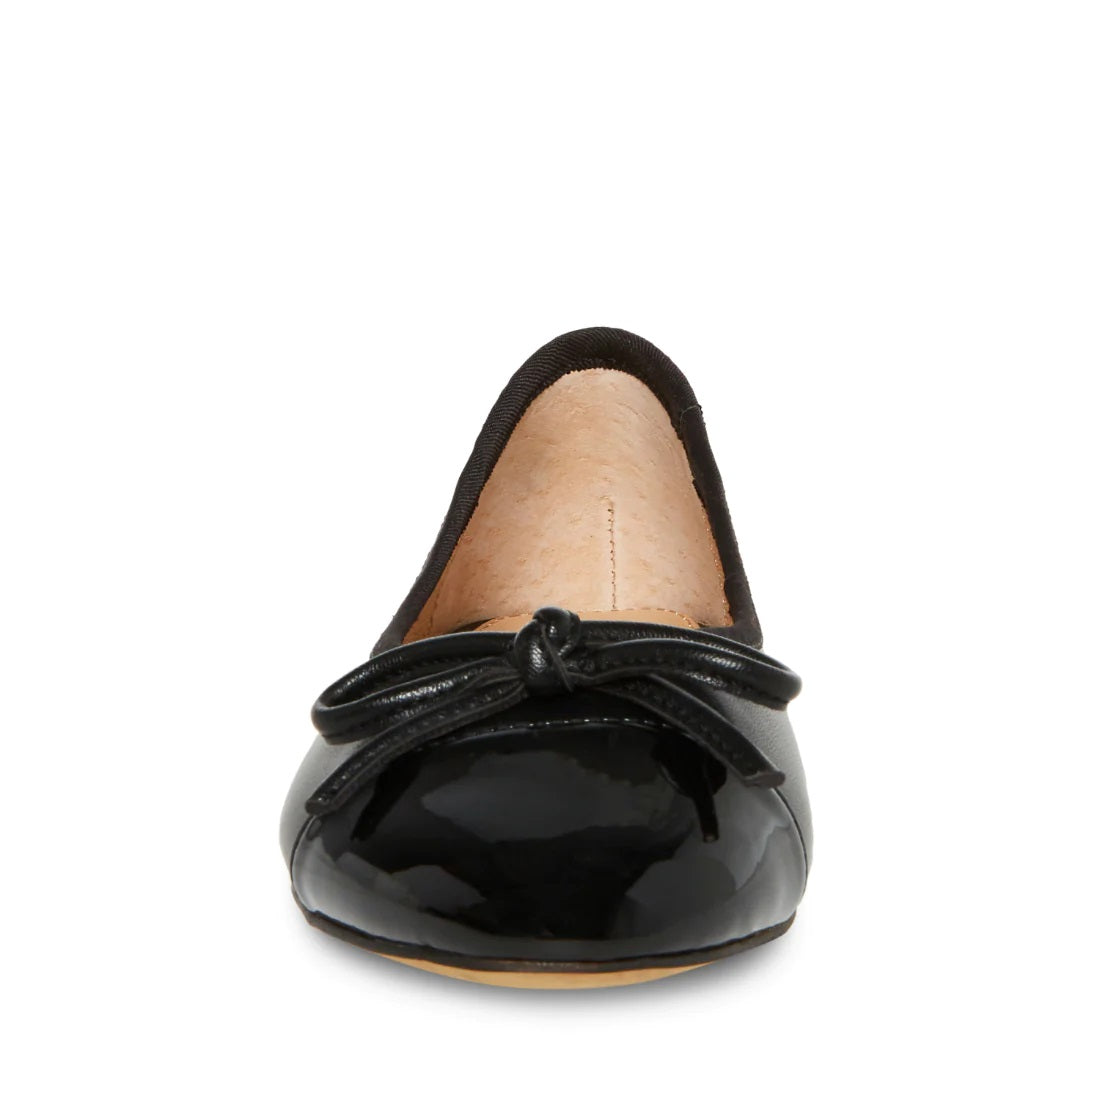 shoes - STEVE MADDEN - Ellison Leather Ballet Slipper - PLENTY